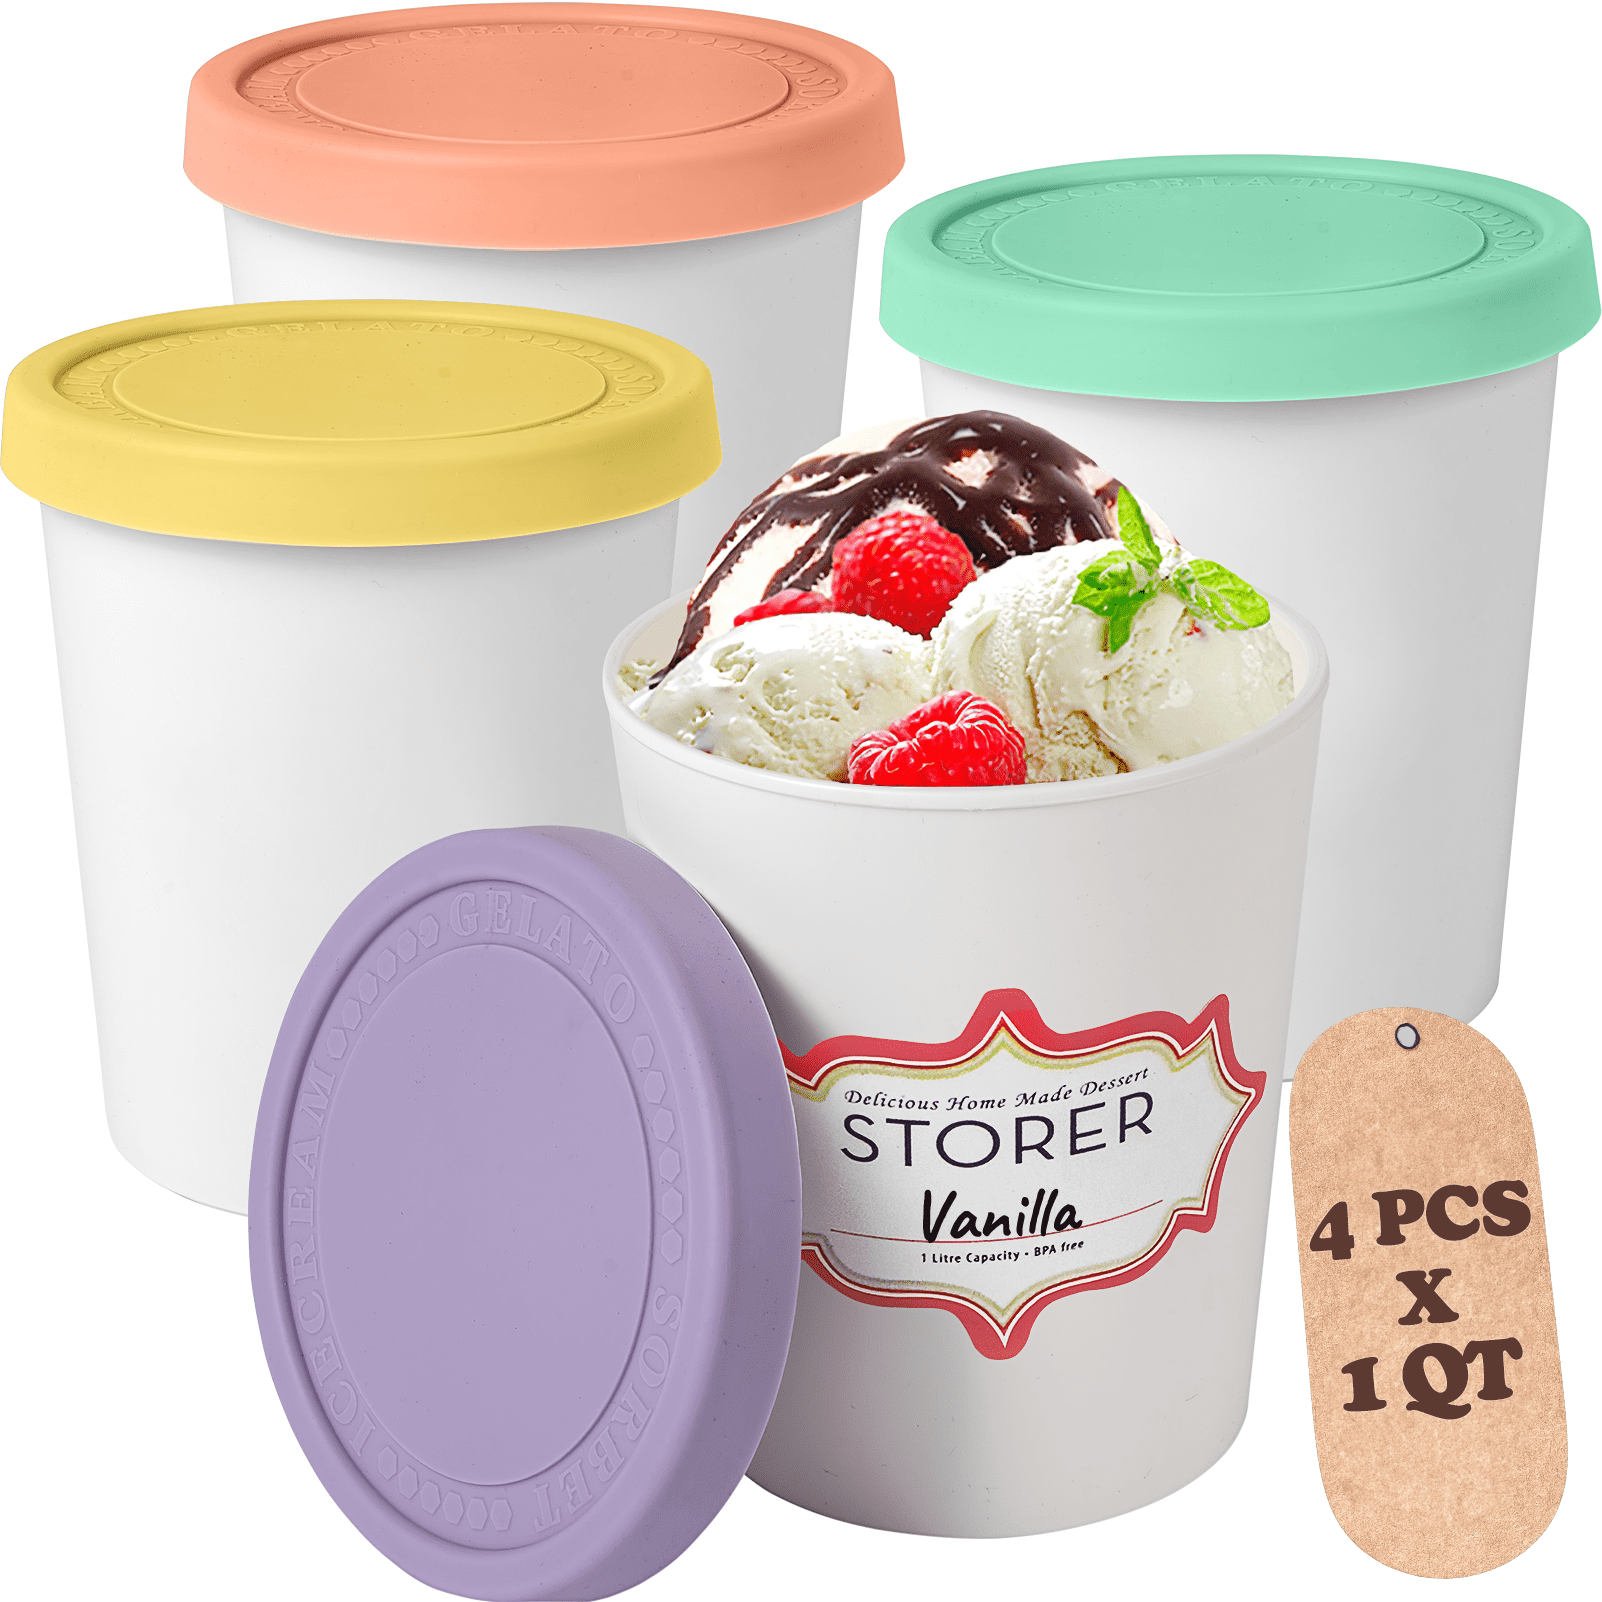 Premium Reusable Ice Cream Containers (2 Pack - 1 Quart Each